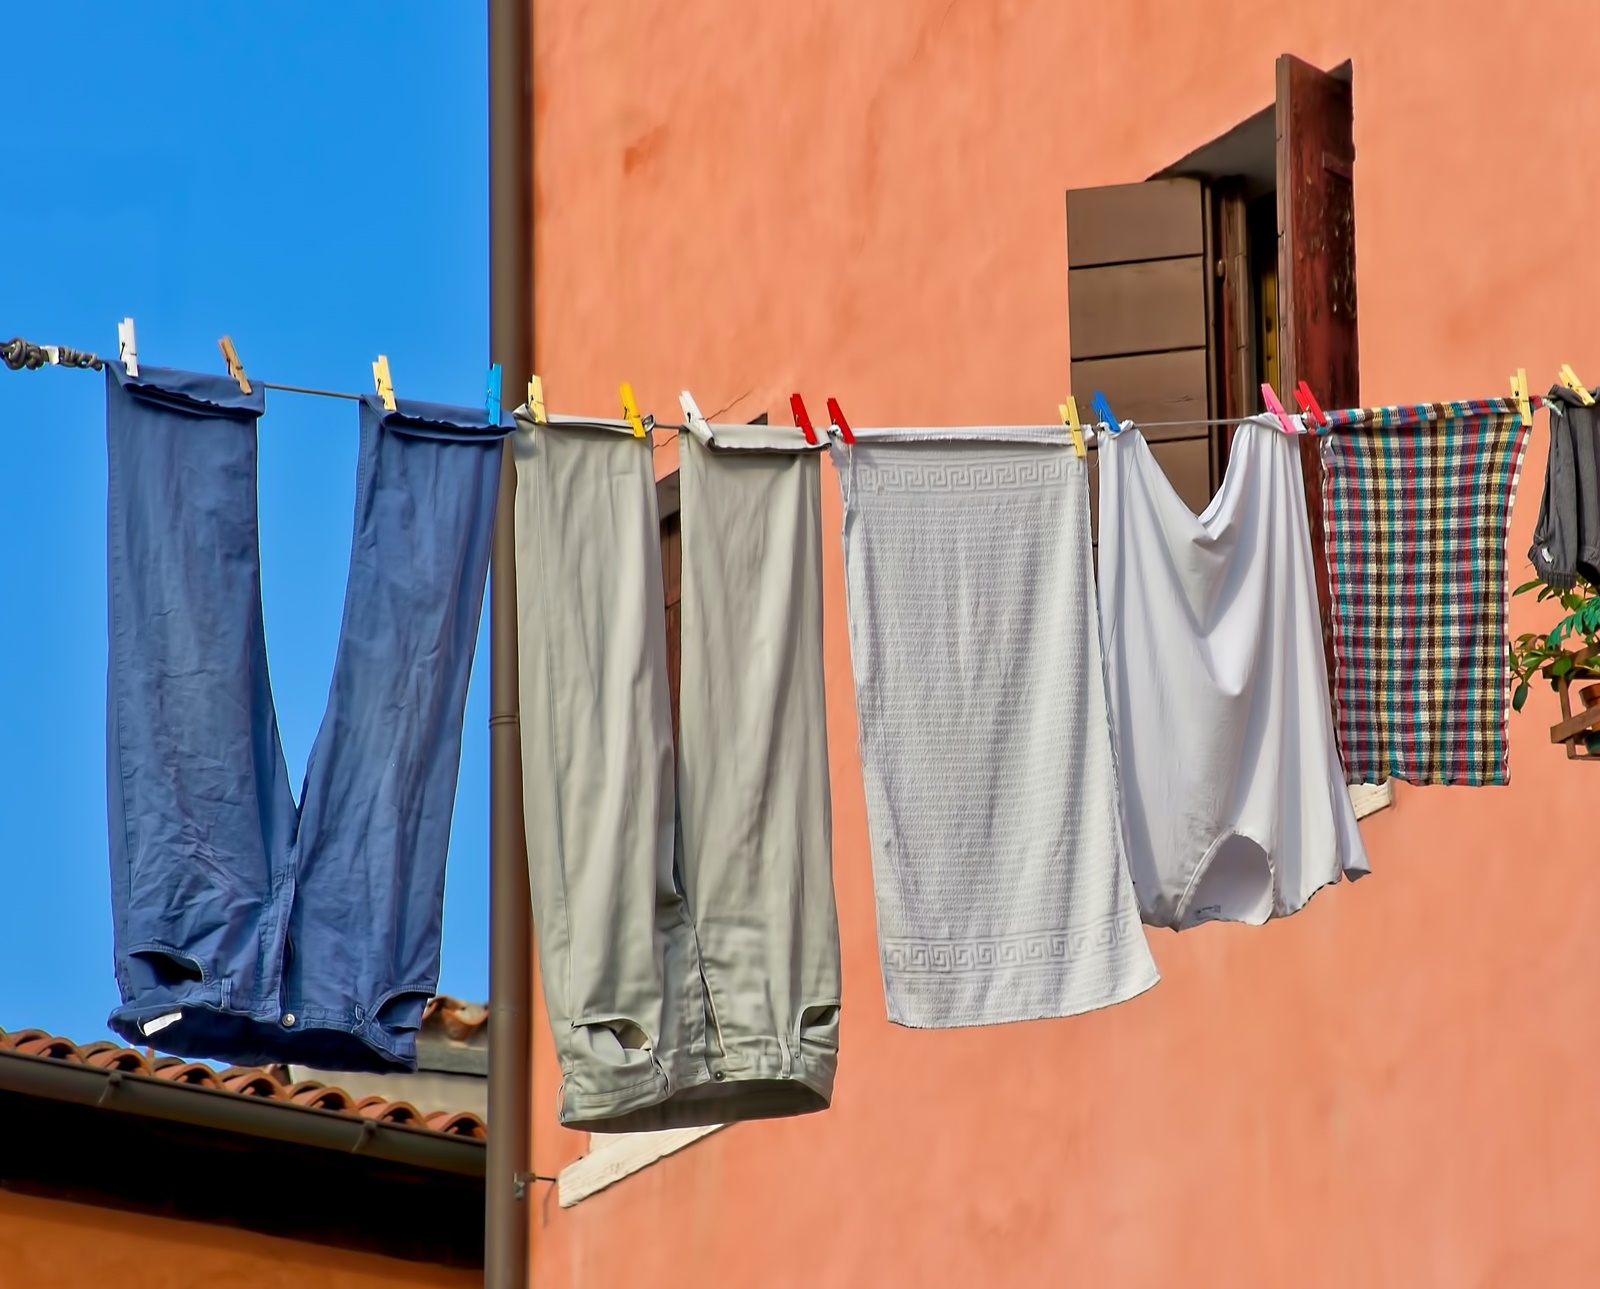 Ξέβαψαν τα ρούχα – τι να κάνω: 4 τρόποι να διορθώσω τη ζημιά